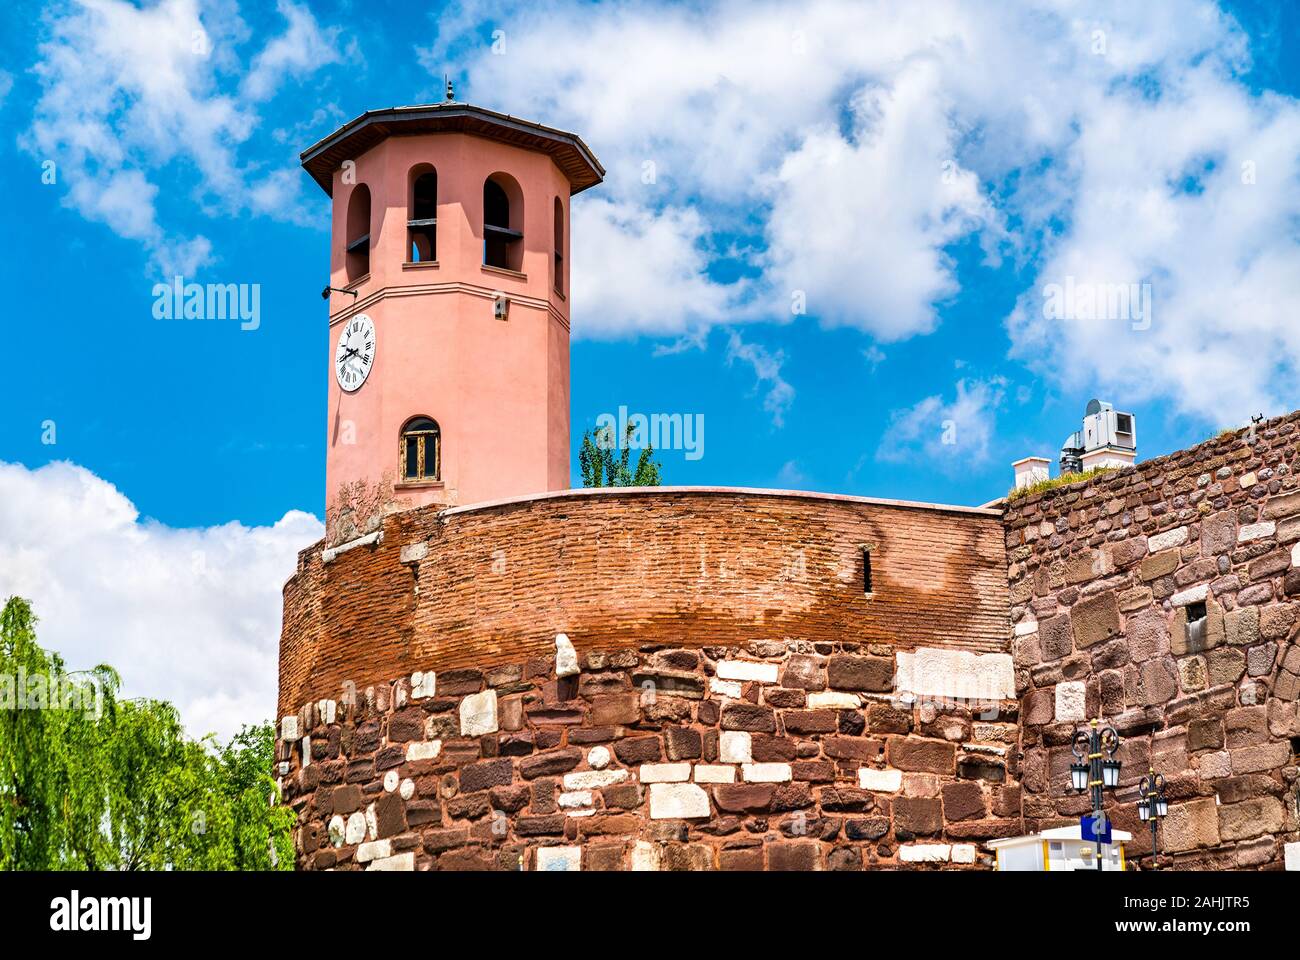 Clock tower at Ankara Castle in Turkey Stock Photo